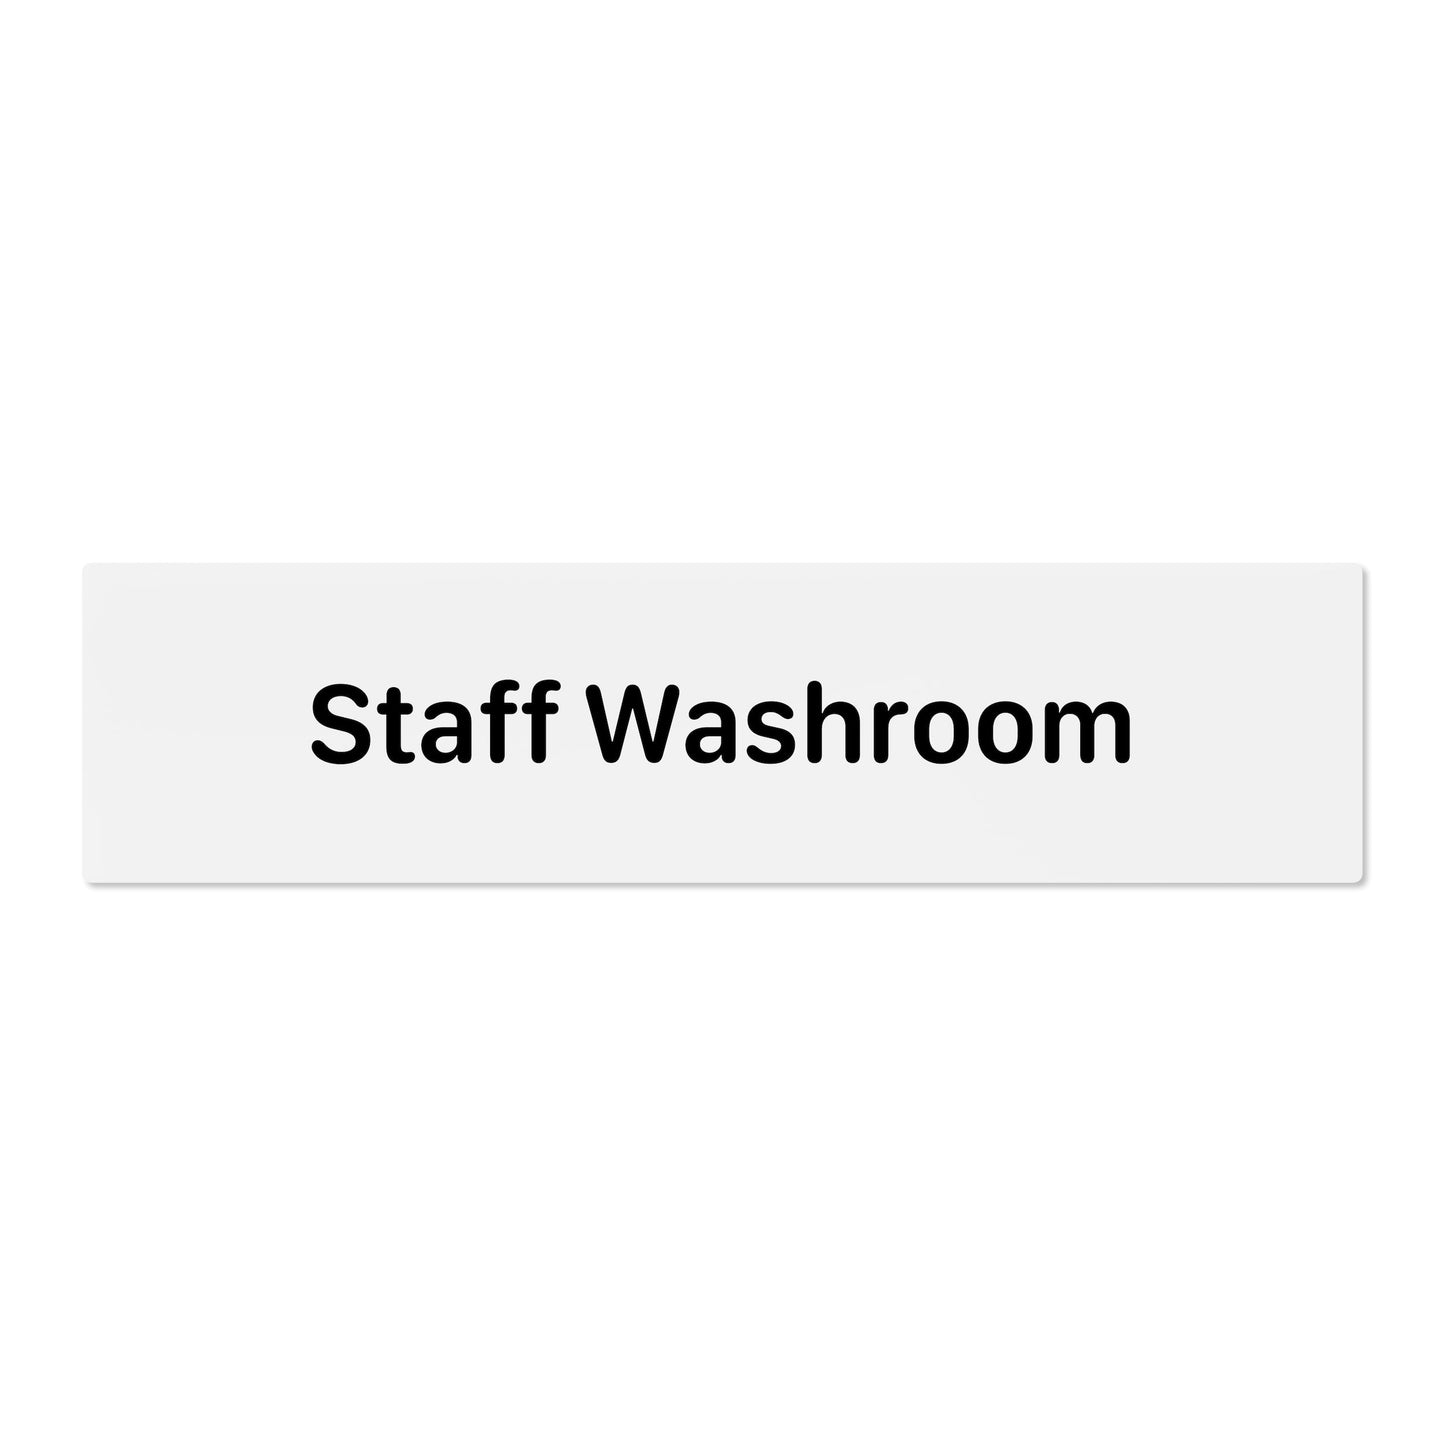 Staff Washroom